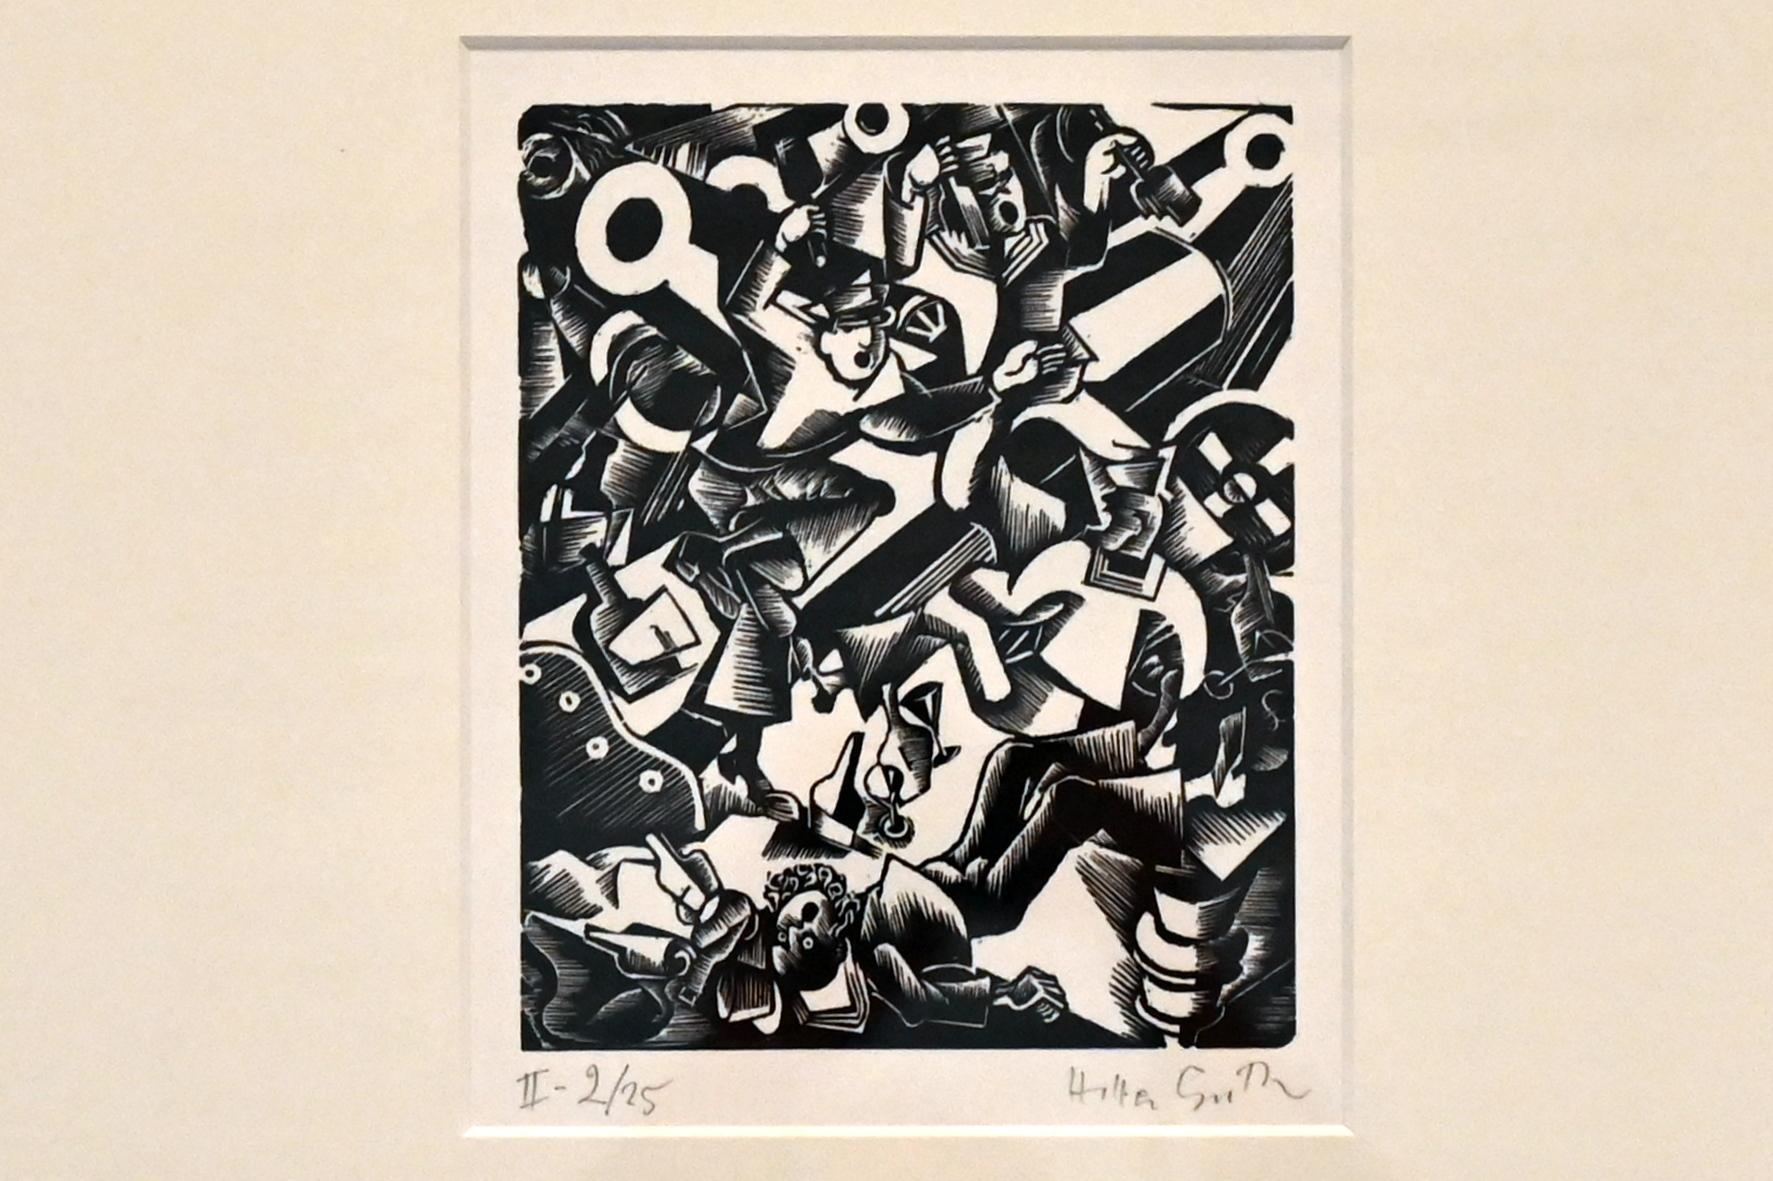 Hella Guth (1933), Kanonensong, Kiel, Kunsthalle, ÜberLeben 3, 1933